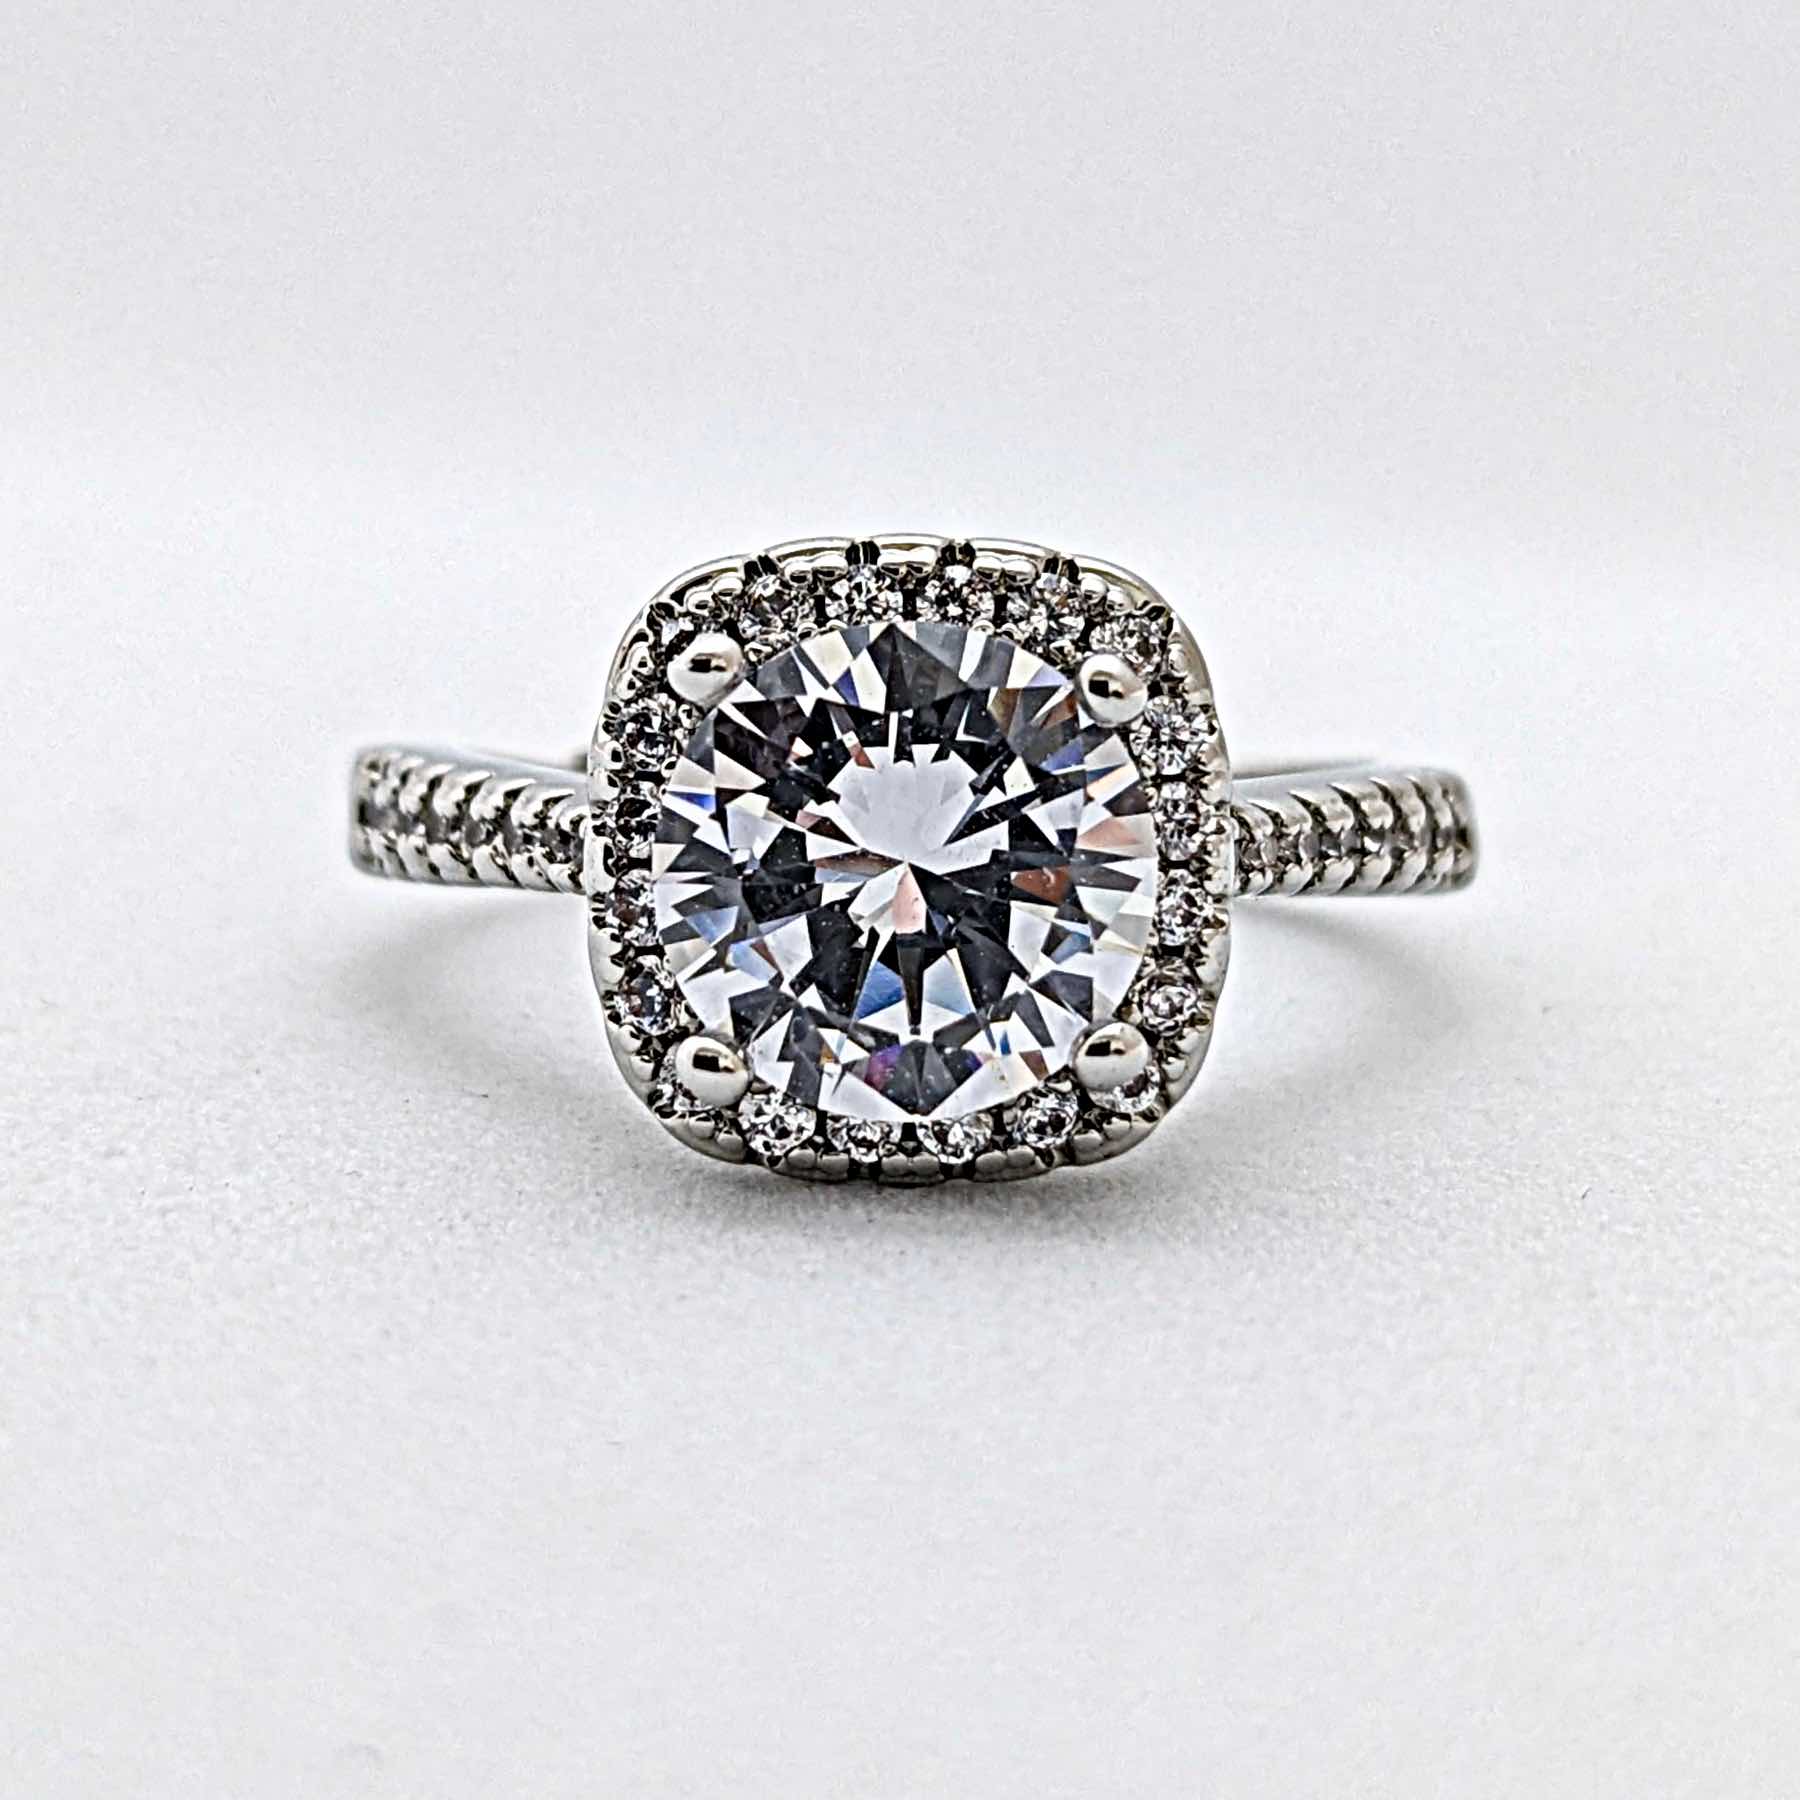 【婚約指輪】ダイヤモンド【2ct】2カラット【テ...の商品画像